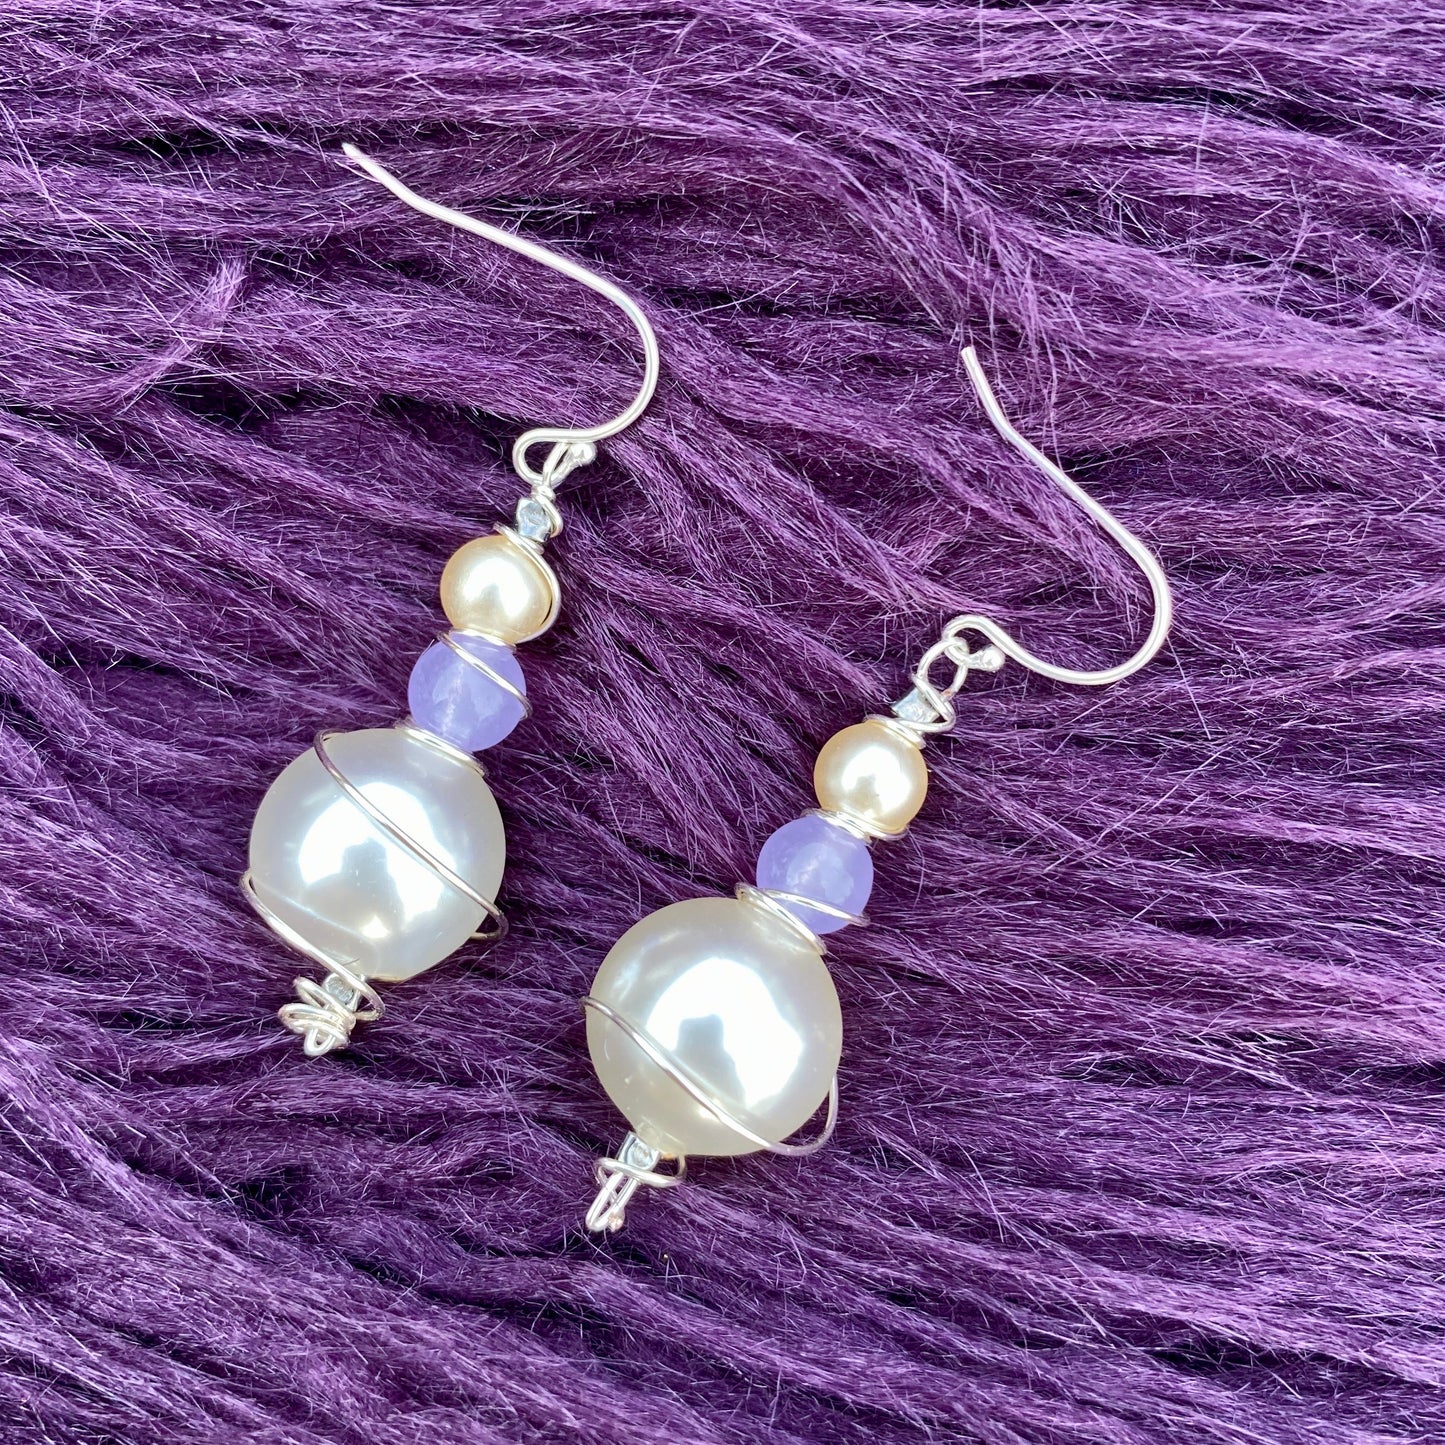 Merle’s Pearls - Antique Pearl Sterling Silver Earrings